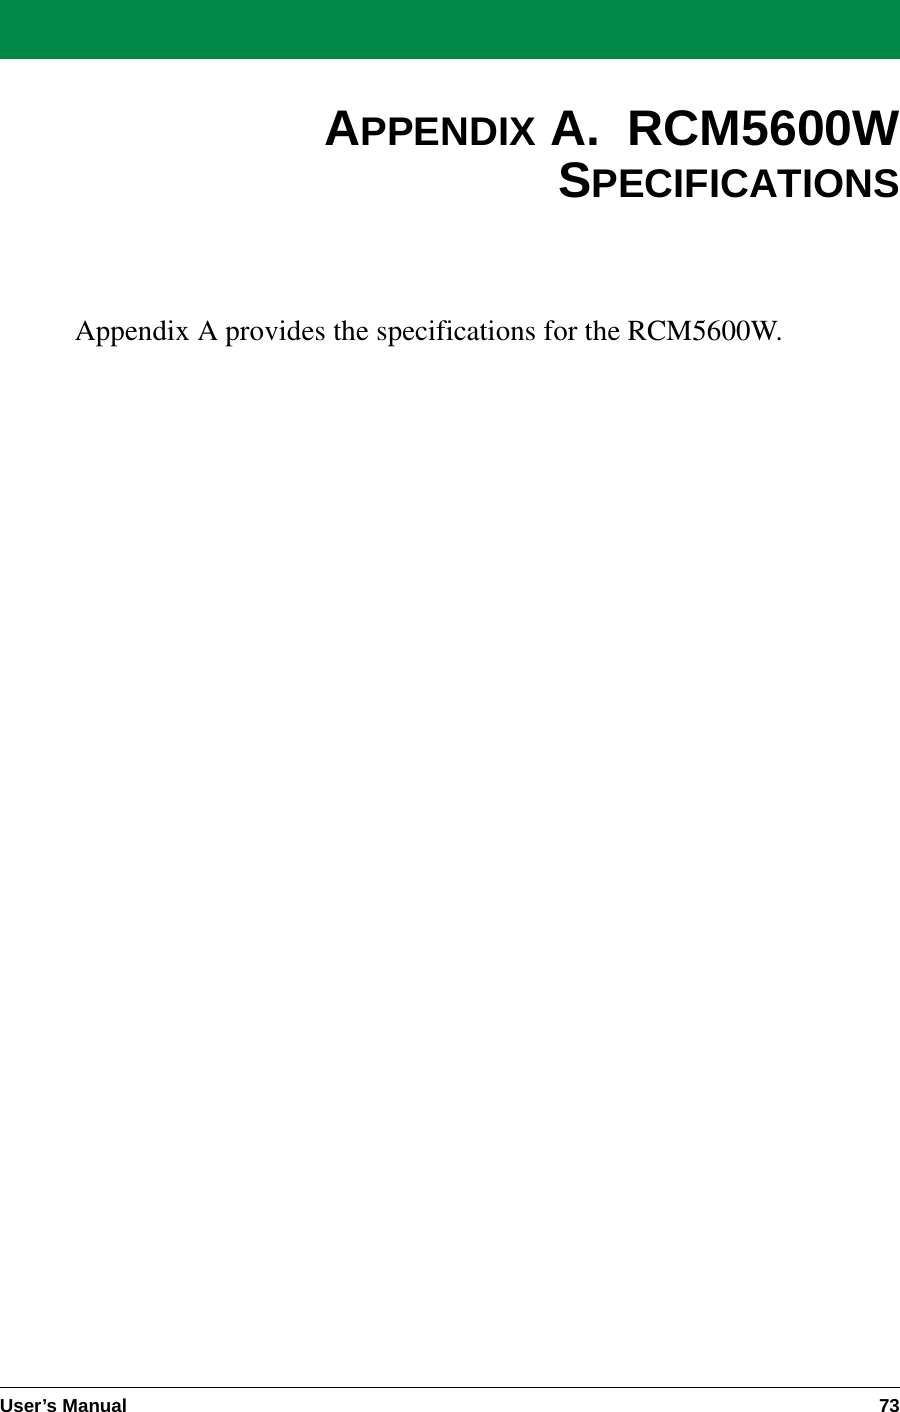 User’s Manual 73APPENDIX A.  RCM5600WSPECIFICATIONSAppendix A provides the specifications for the RCM5600W.